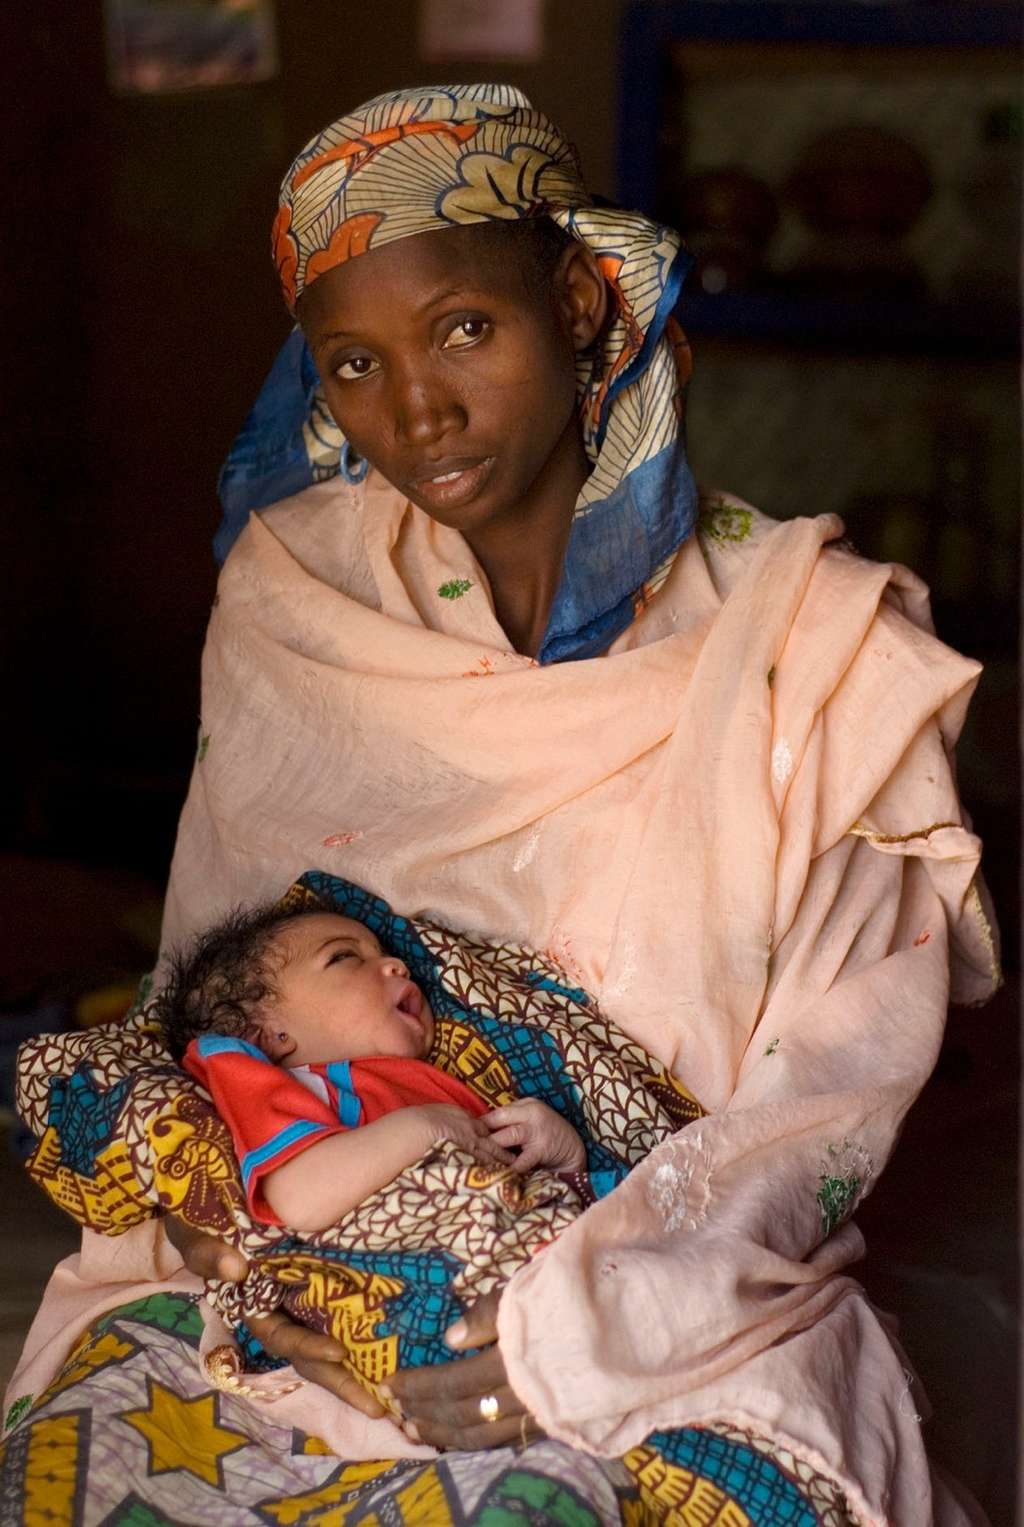 Dans le monde, l'Onu a estimé à 330.000 le nombre d'enfants infectés par le VIH à la naissance durant l'année 2011. Il existe pourtant des traitements limitant fortement le risque de contamination de la mère à l'enfant, mais les régions du monde les plus touchées par le Sida, comme l'Afrique subsaharienne, n'y ont presque pas accès. © Soumik Kar, Fotopédia, cc by sa 2.0